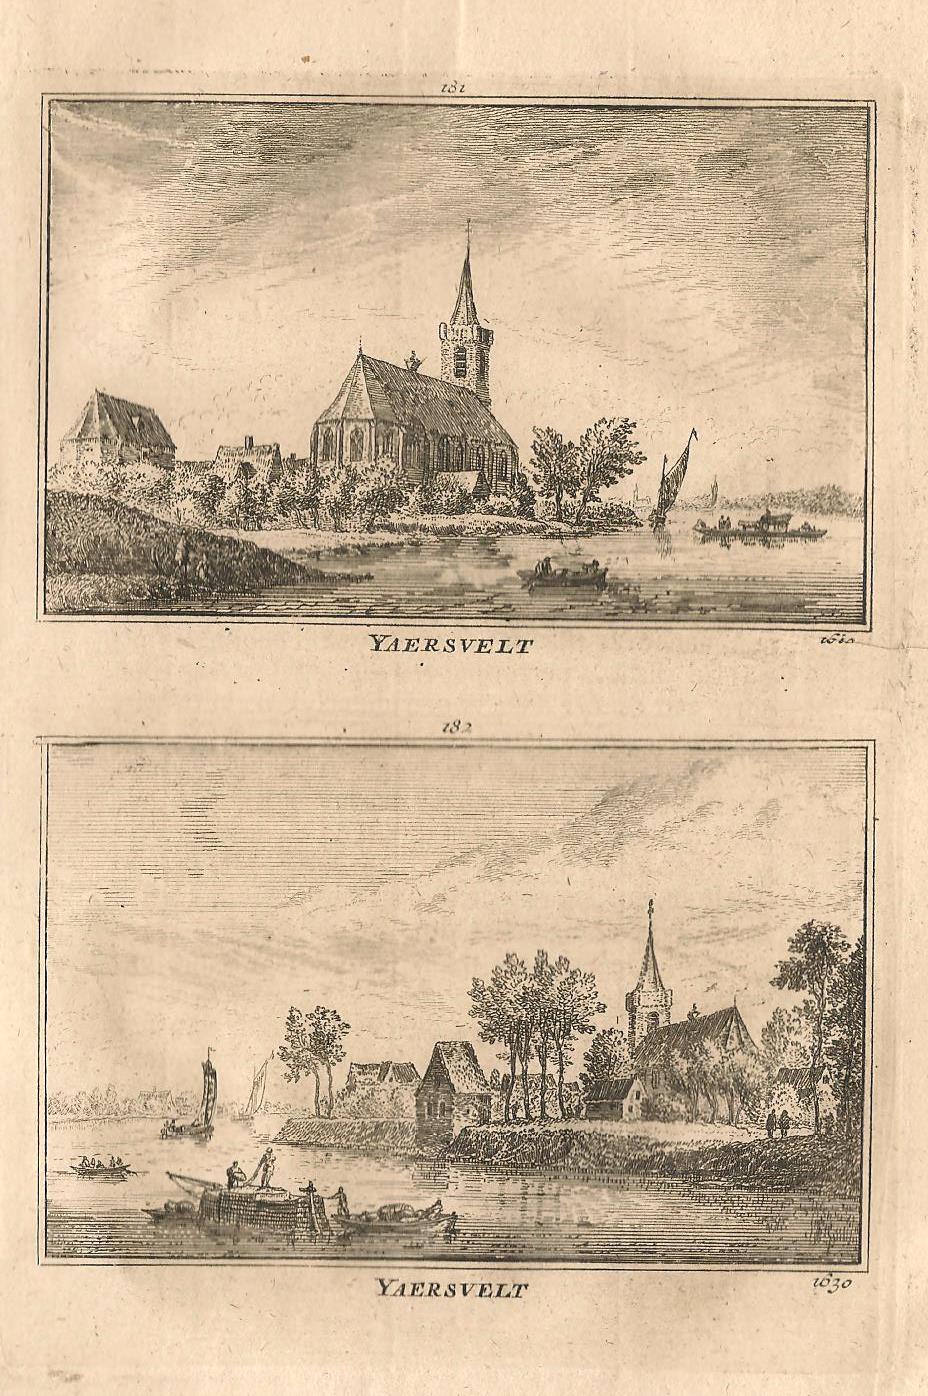 Jaarsveld - A Rademaker / JA Crajenschot - 1792